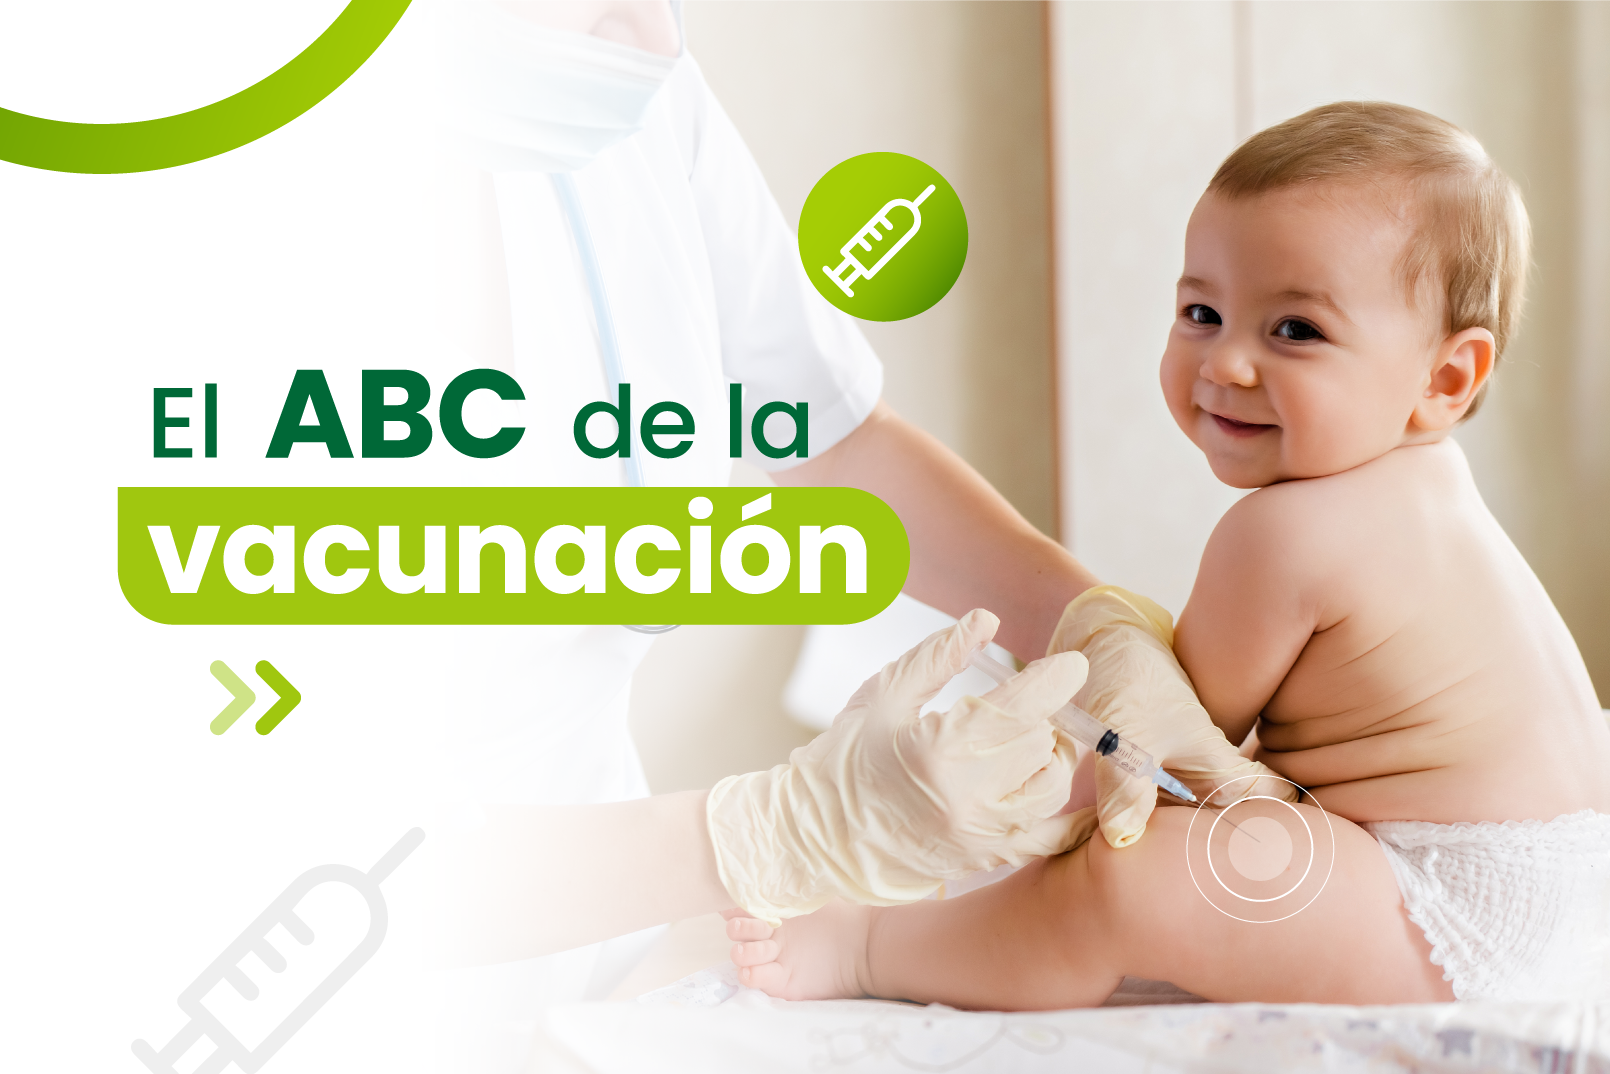 El ABC de la vacunación